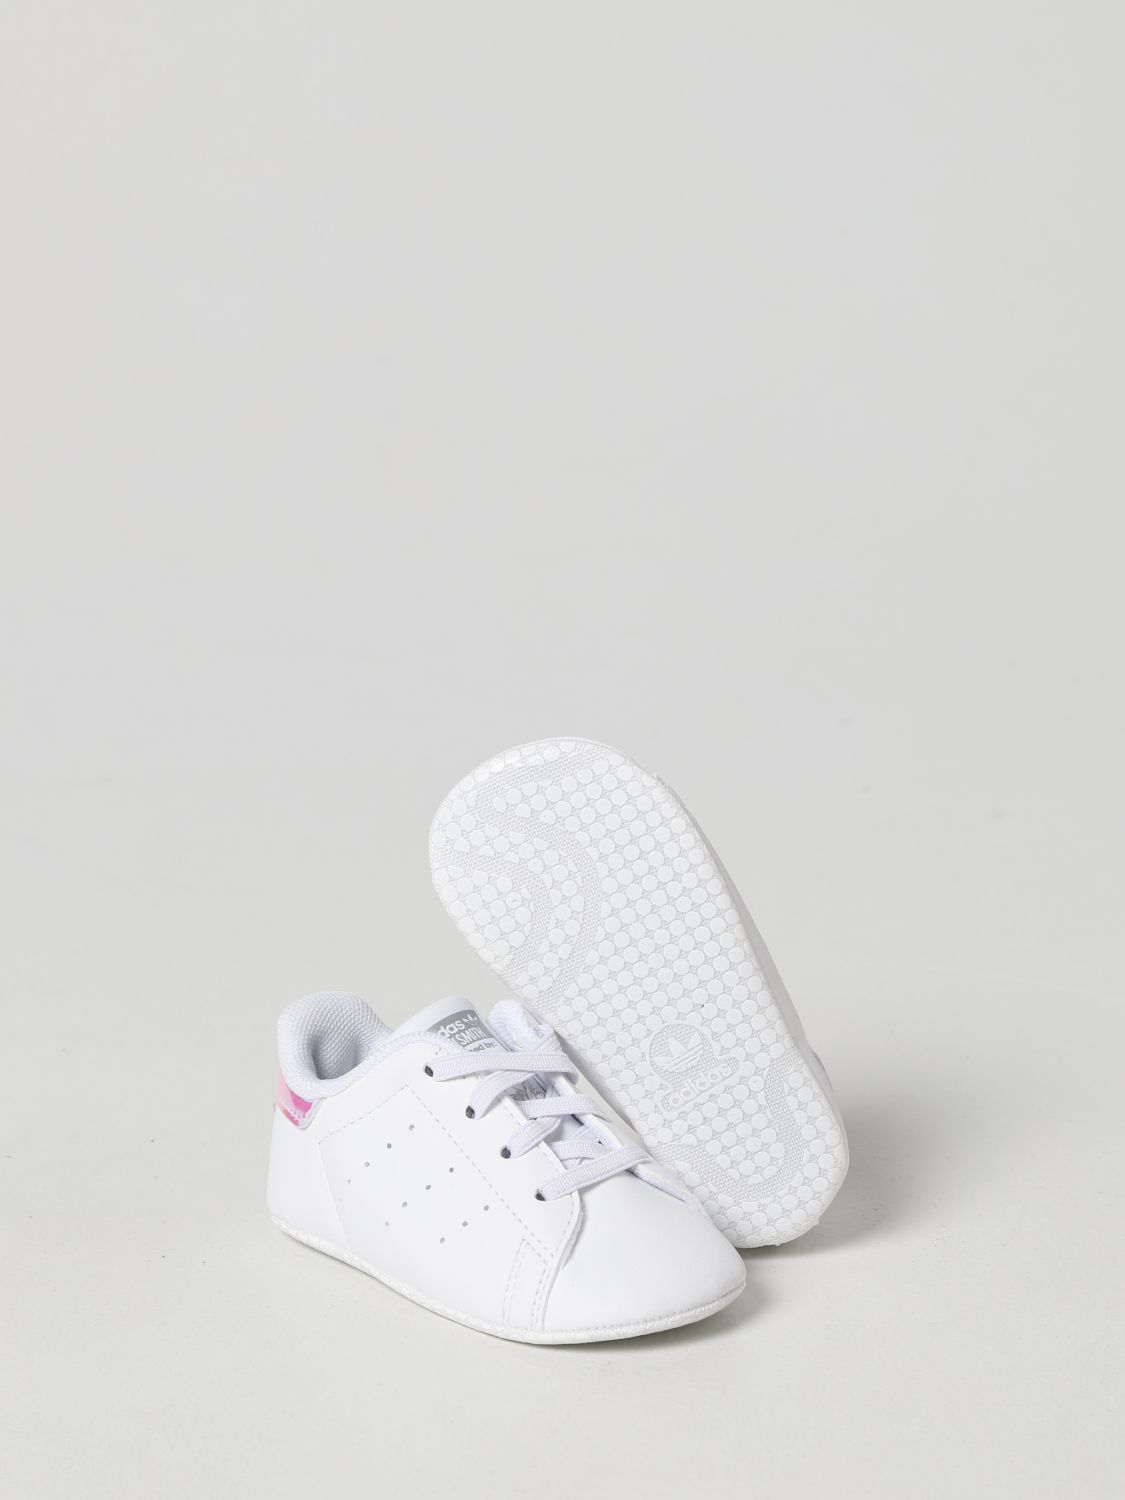 ADIDAS ORIGINALS: Zapatos para bebé, Blanco Zapatos Adidas Originals FY7892 línea en GIGLIO.COM